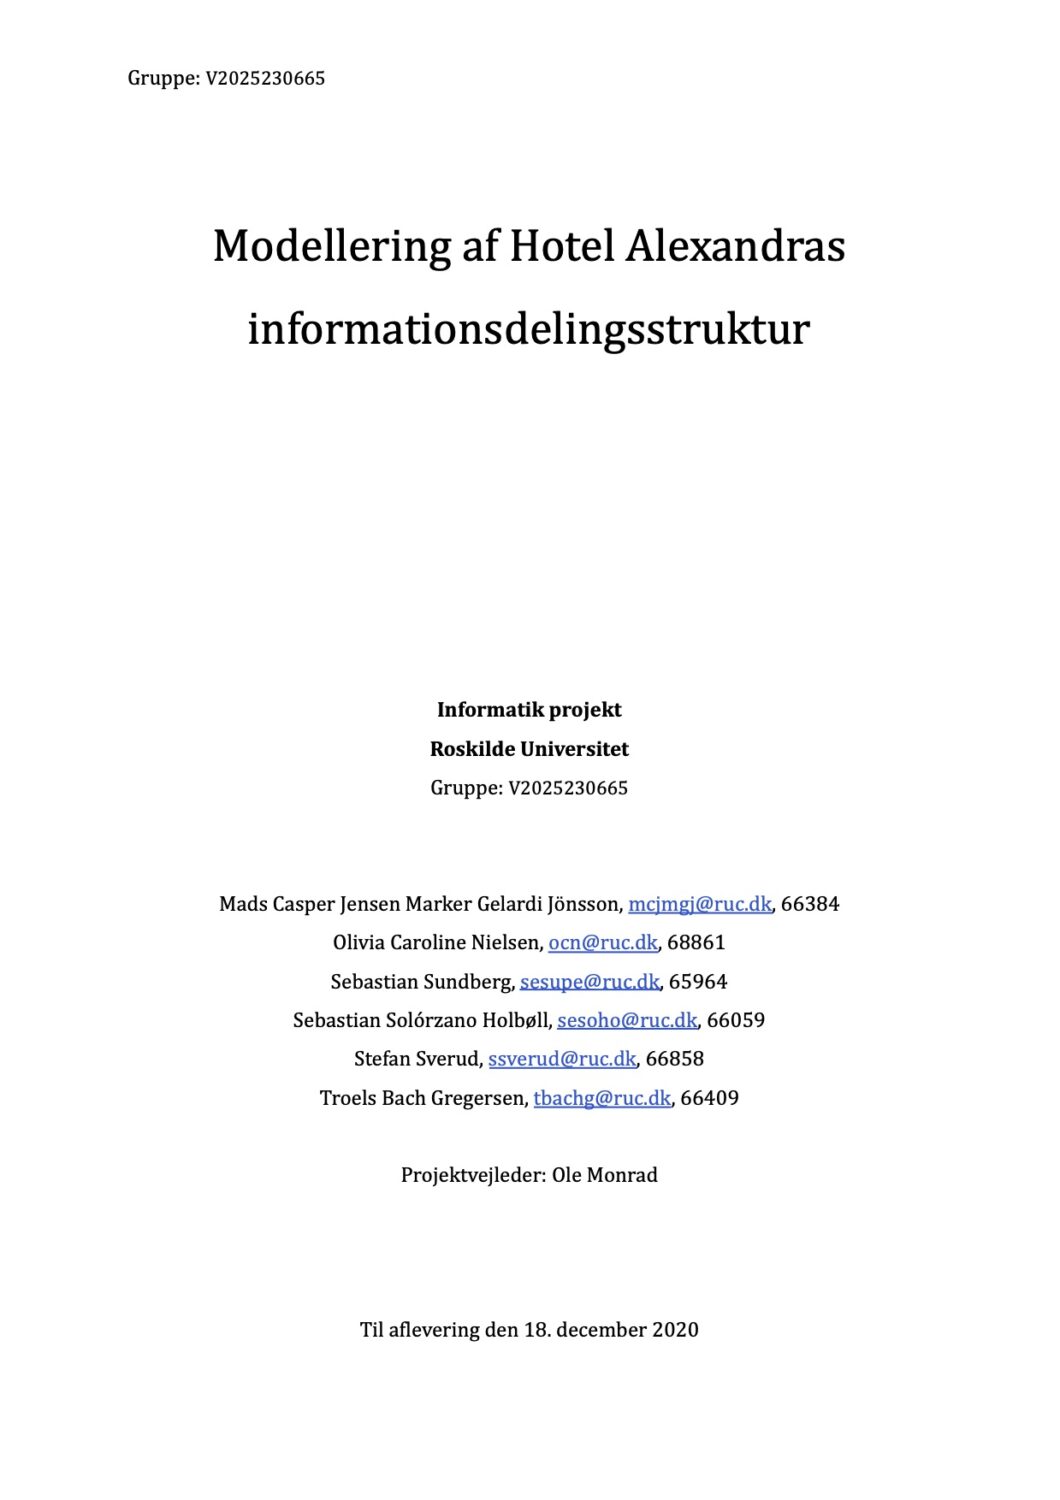 “Modellering af Hotel Alexandras…